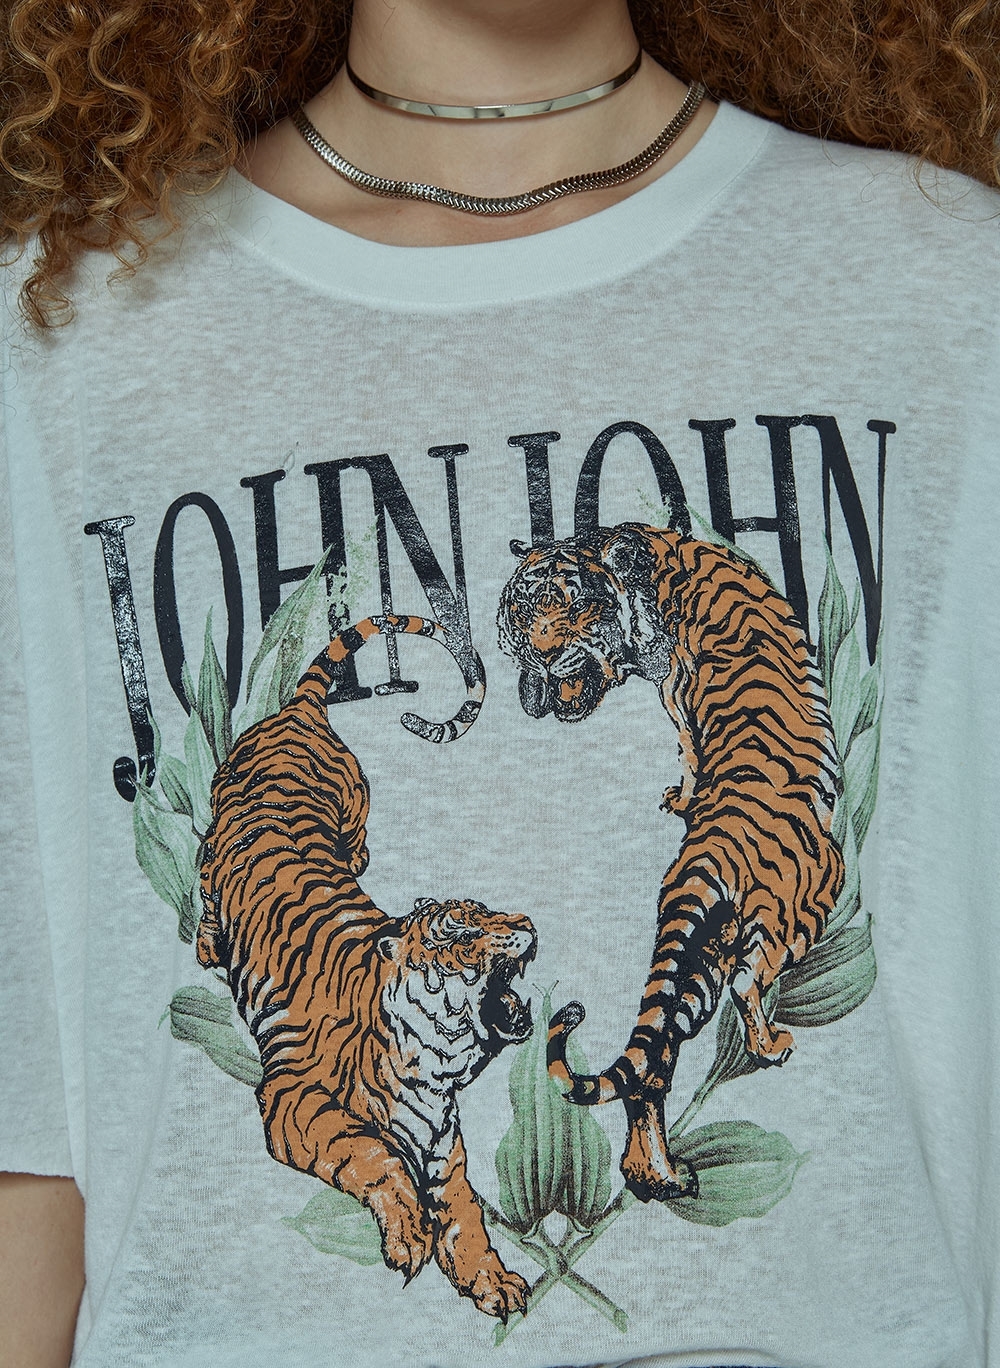 Camiseta Real Tigers John John Feminina 03.62.0258 - Camiseta Real Tigers John  John Feminina - JOHN JOHN FEM